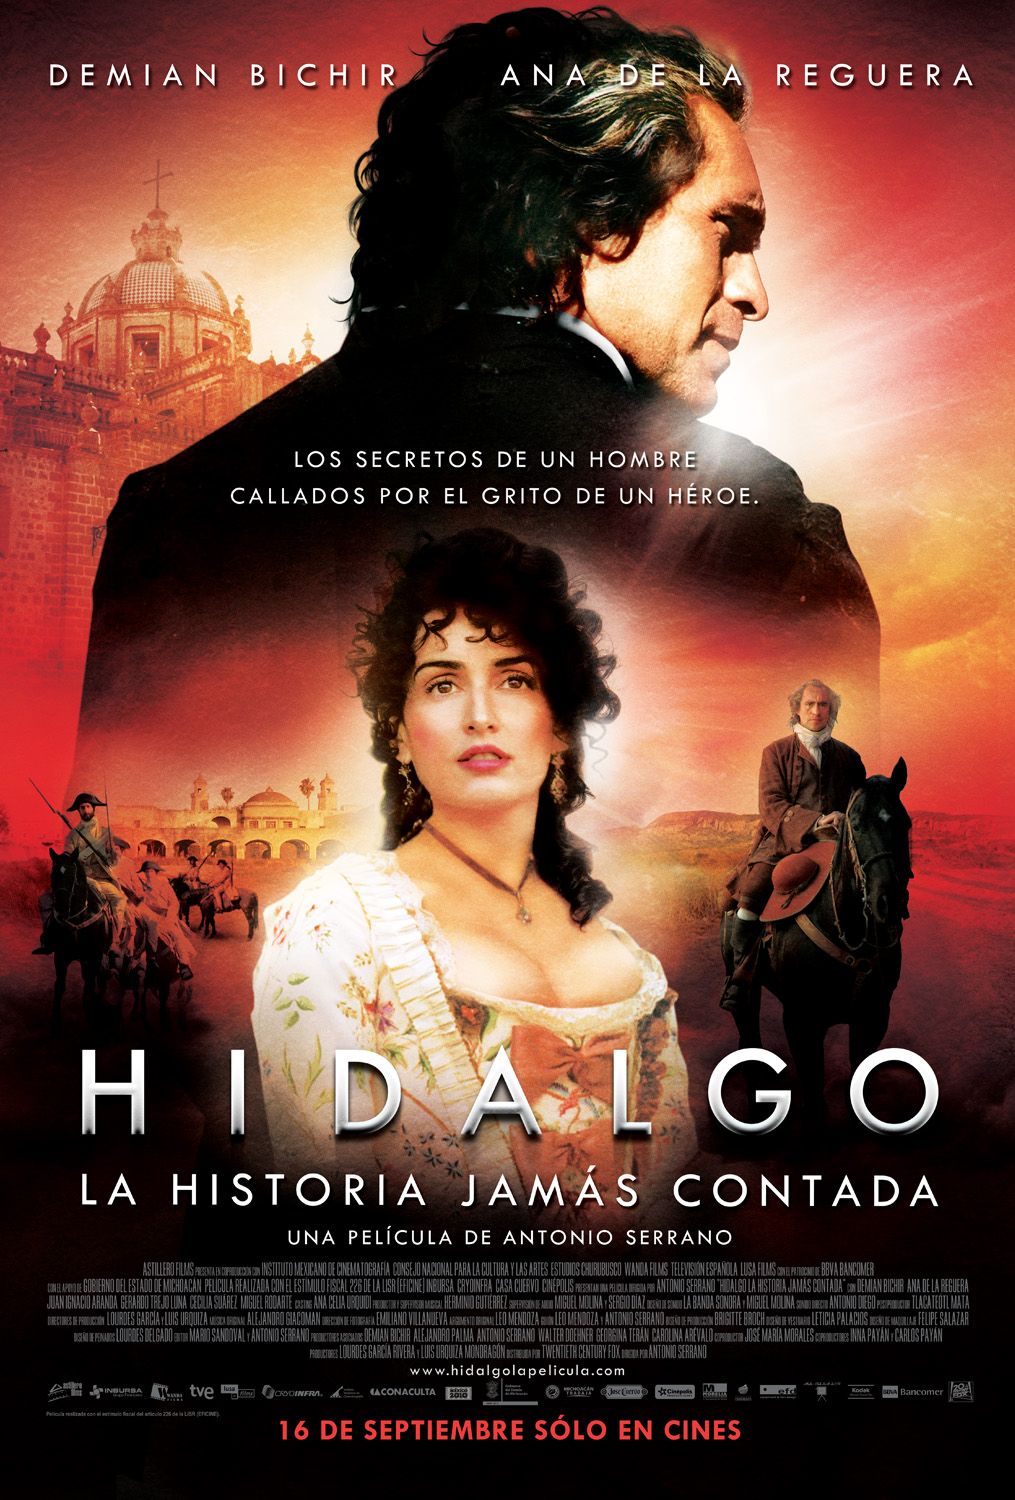 Extra Large Movie Poster Image for Hidalgo - La historia jamás contada. (#4 of 4)